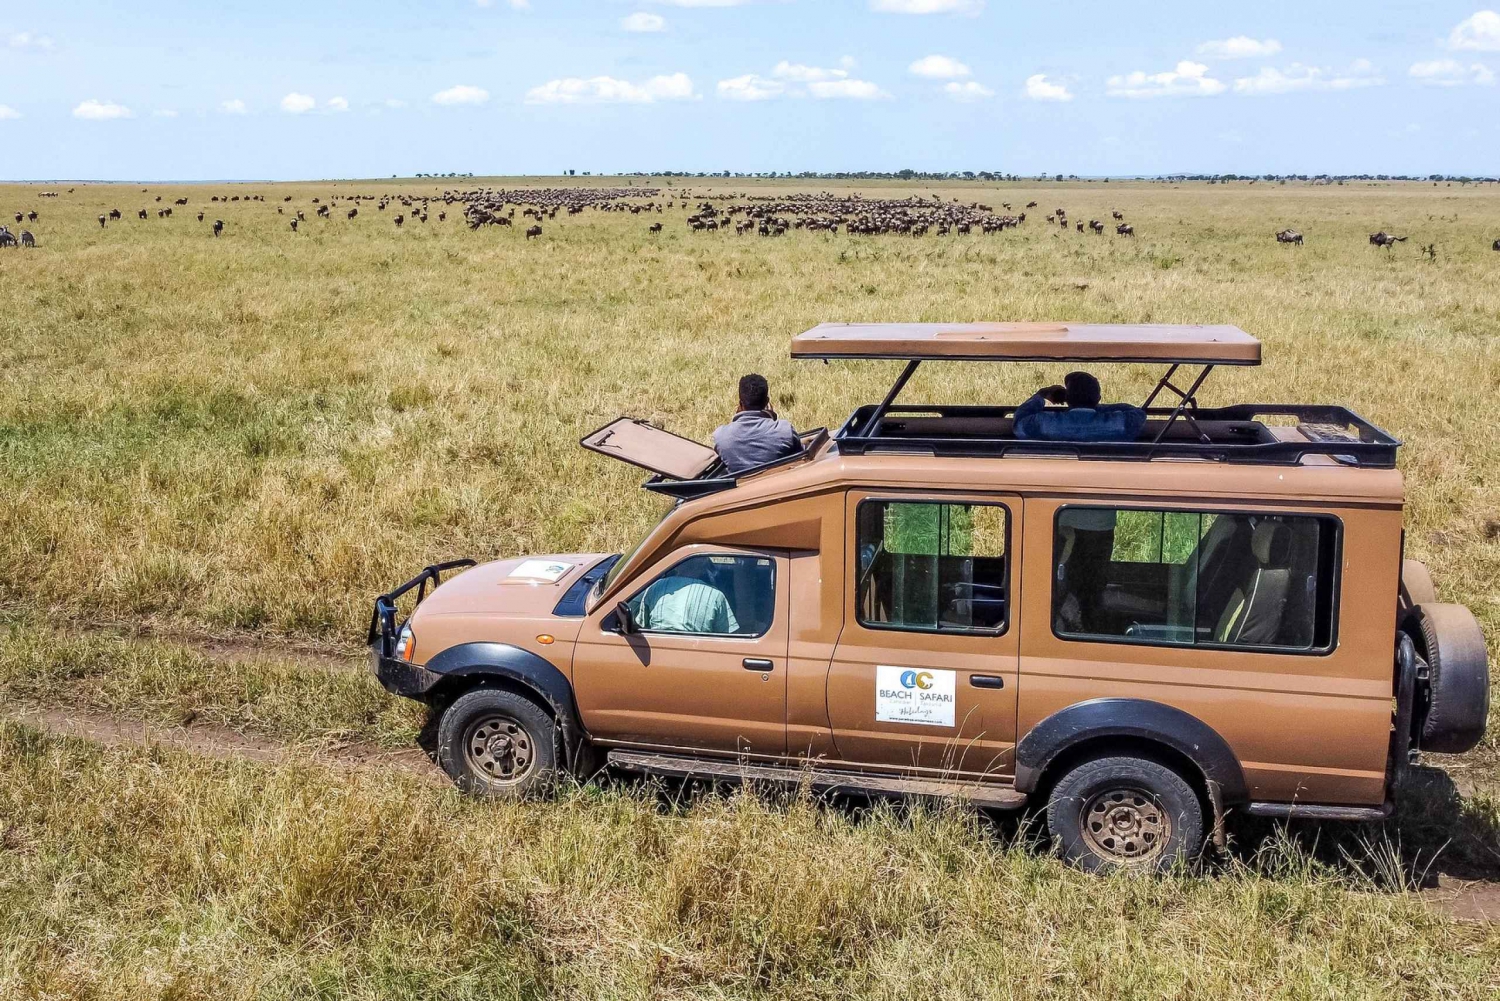 Tarangire e Serengeti: safari con transfer di andata e volo di ritorno da Arusha